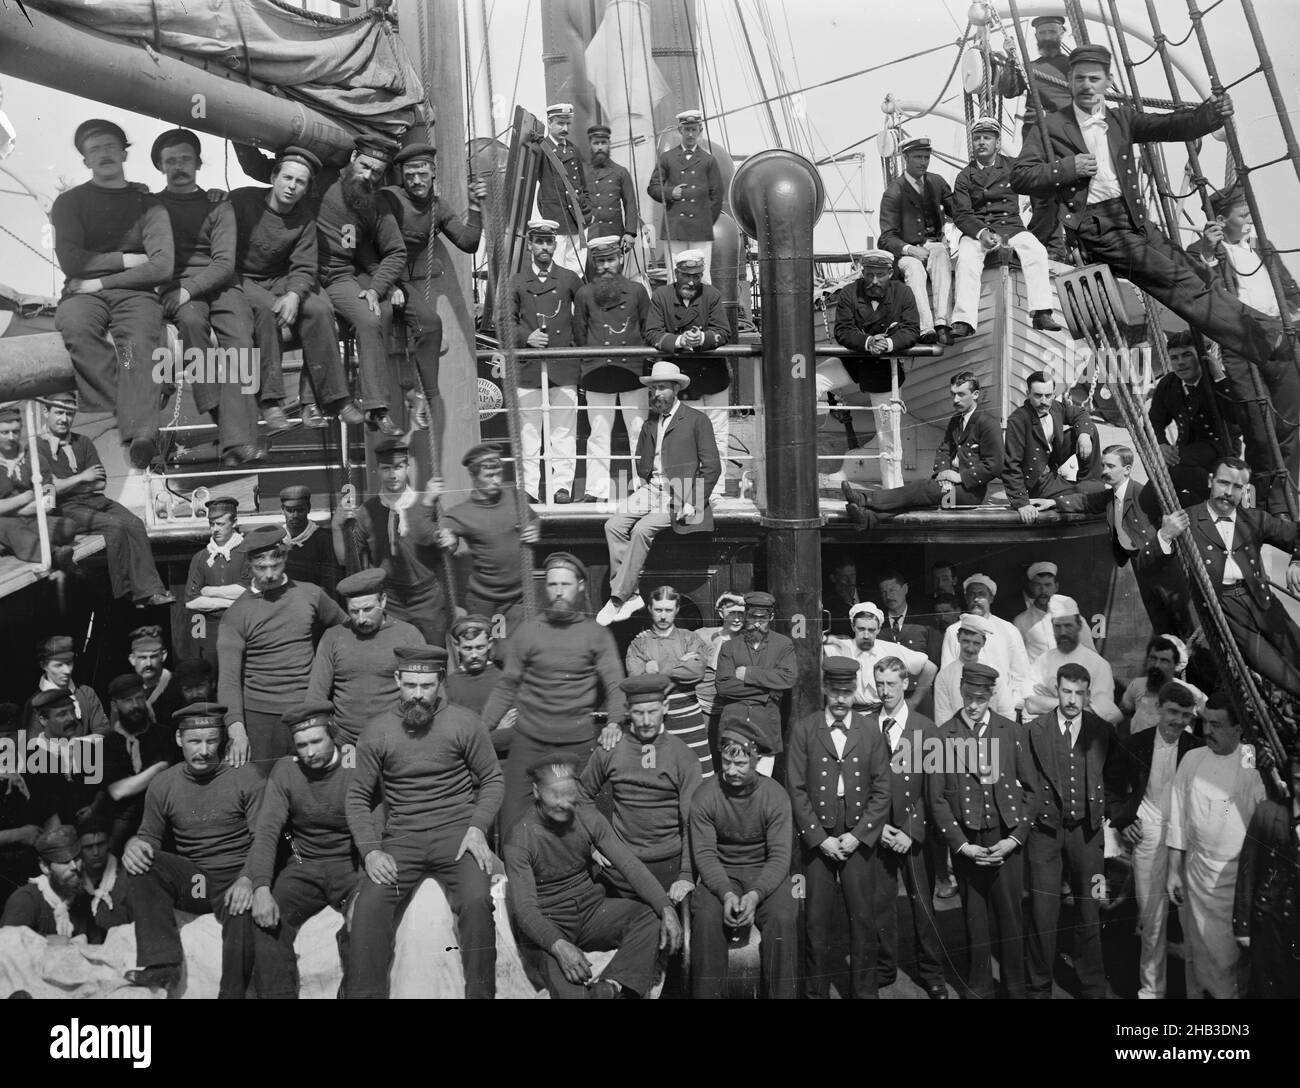 Ships Company 2nd Trip, studio Burton Brothers, studio de photographie, juillet 1884, Nouvelle-Zélande,Photographie en noir et blanc, équipe de gros navires sur les ponts supérieurs.Tout en uniforme.Certains sont assis la plupart debout ou pendant des cordes (à droite Banque D'Images